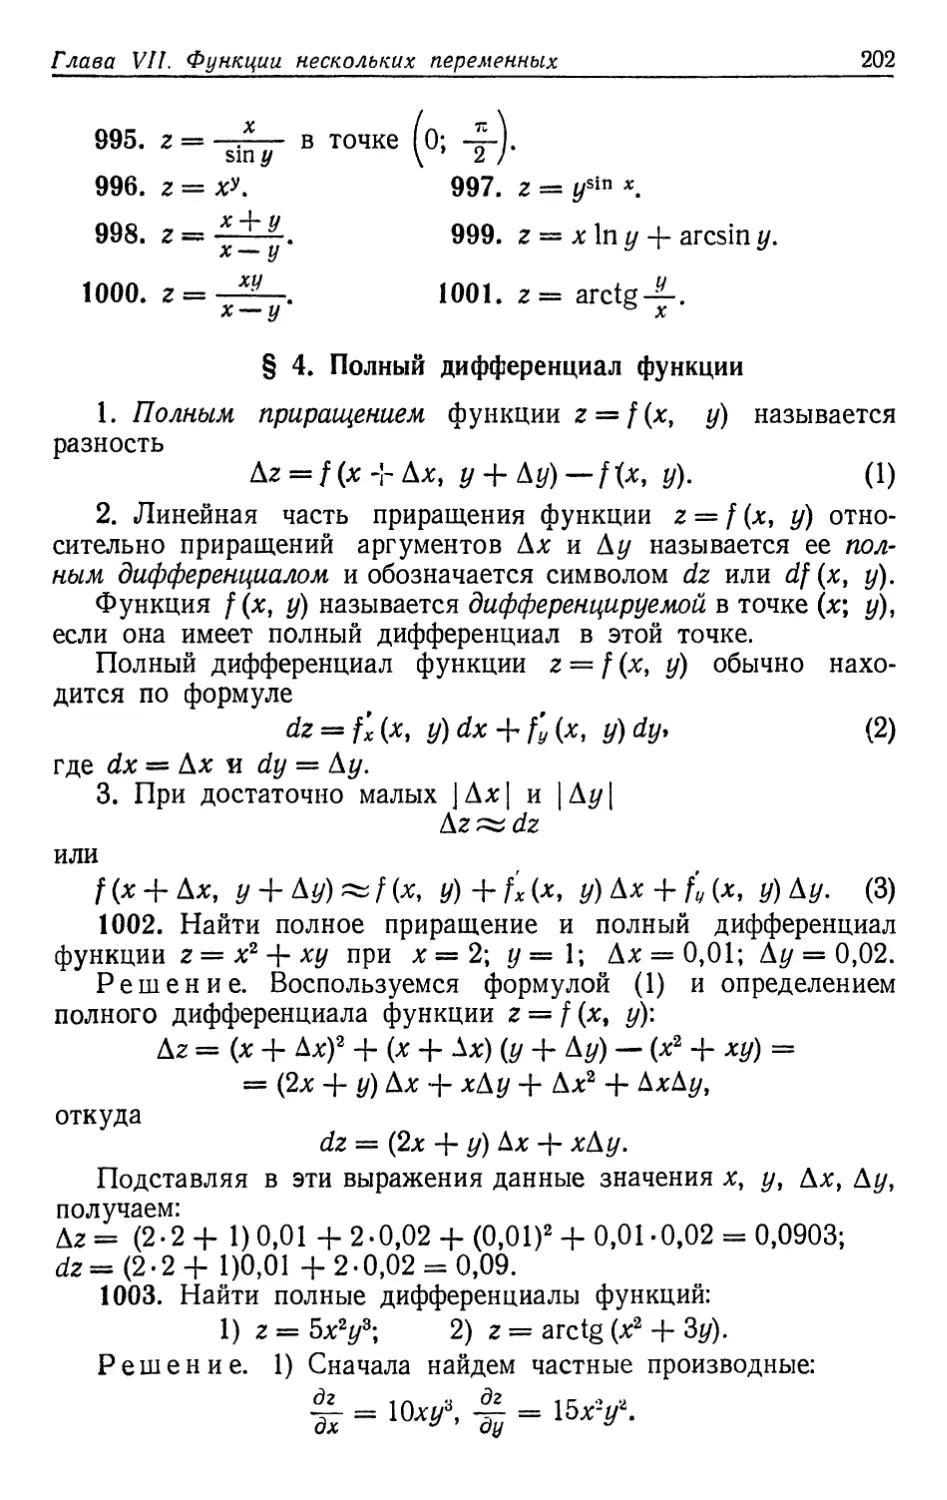 § 4. Полный дифференциал функции